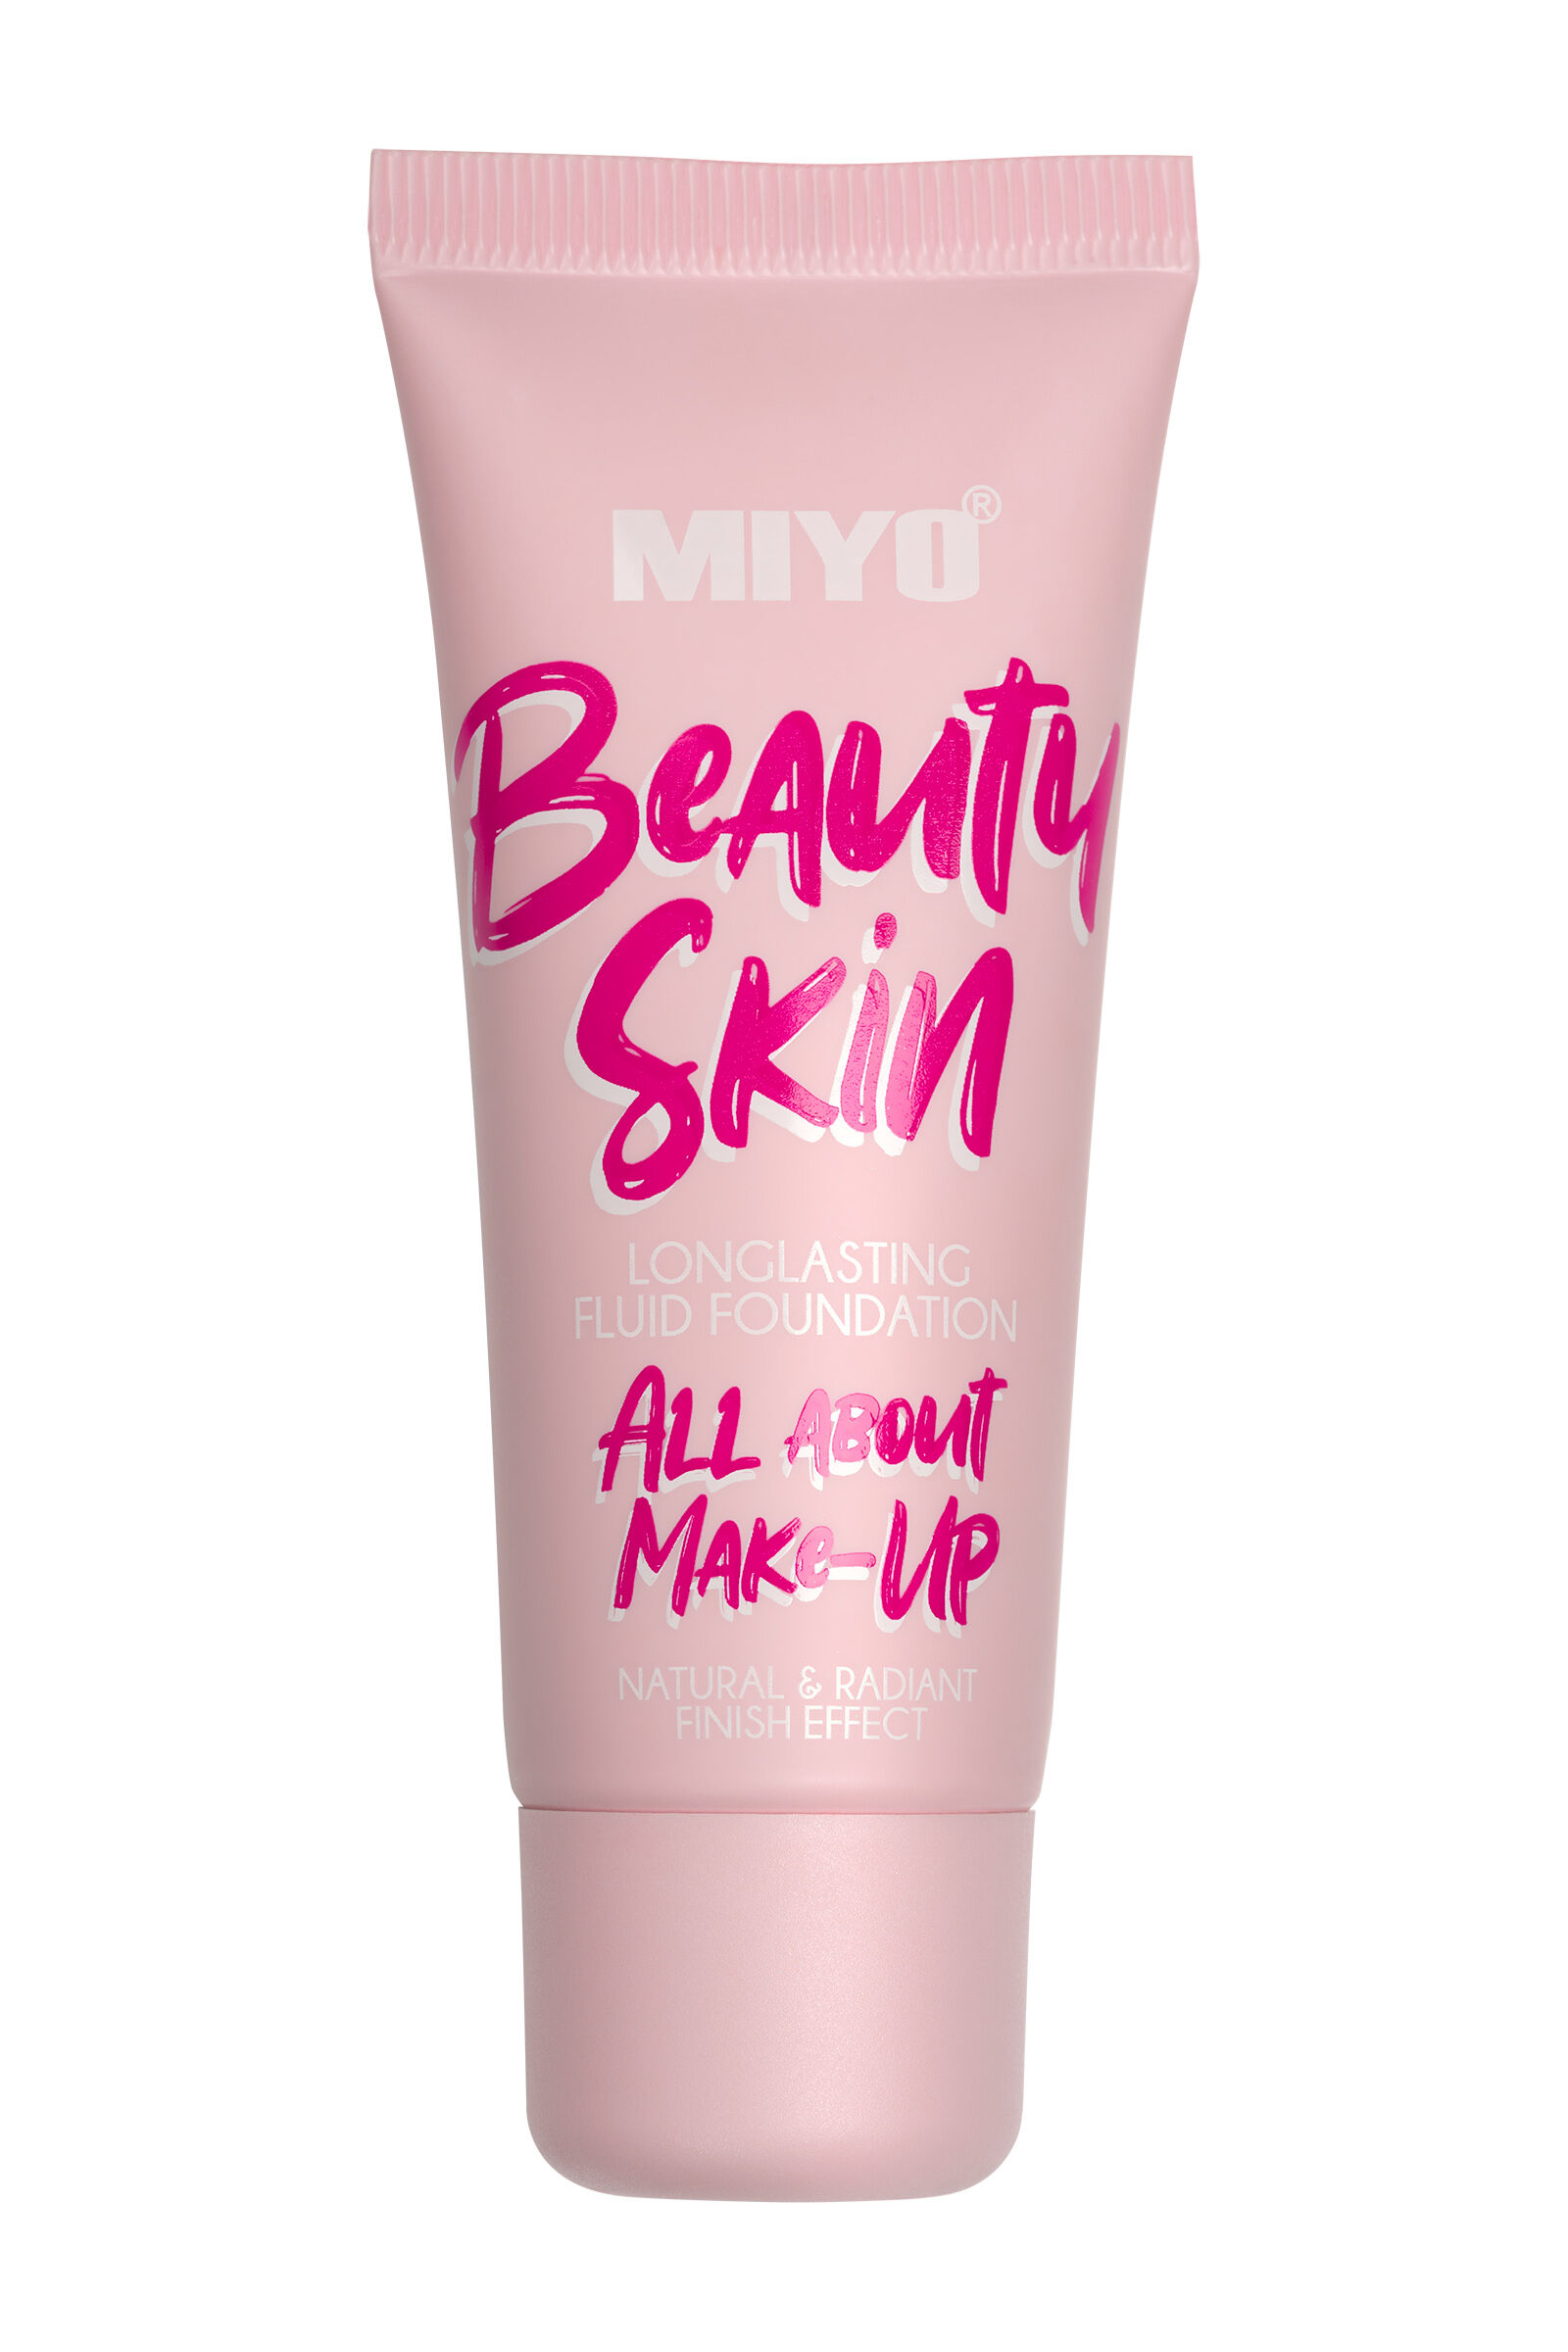 Тональный крем для лица 02 Miyo Beauty Skin, 30 мл